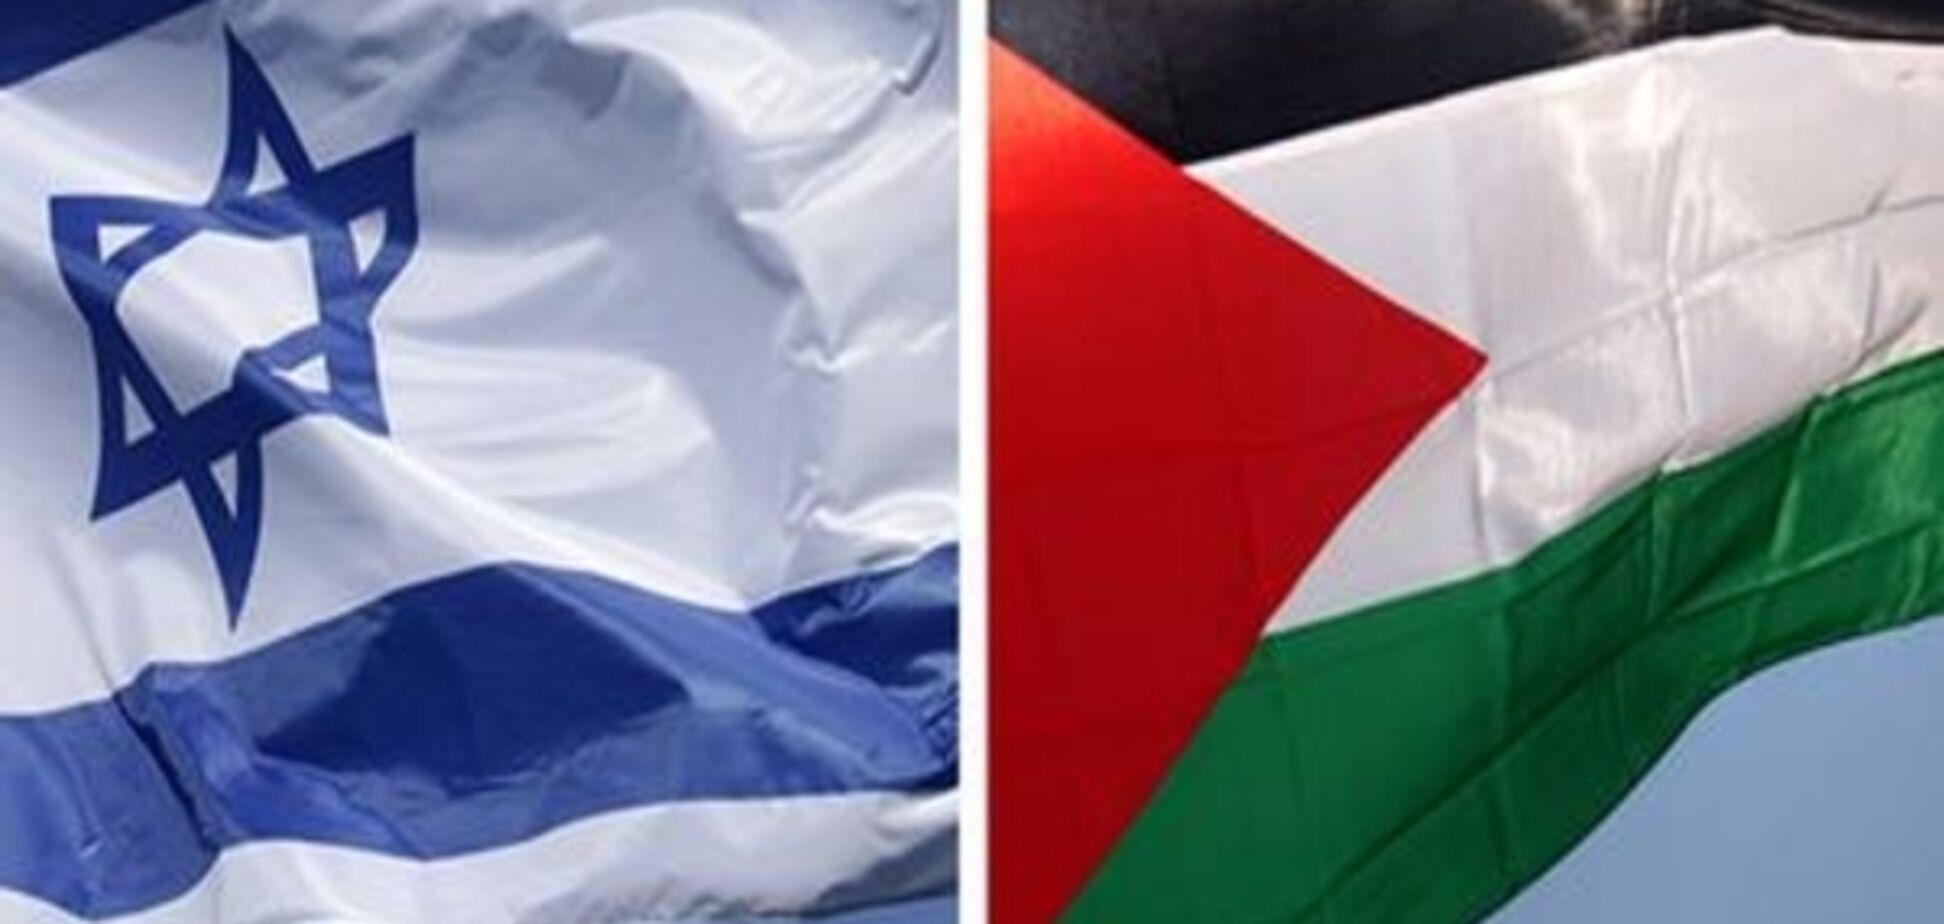 США спантеличили Францію позицією щодо Ізраїлю та Палестини